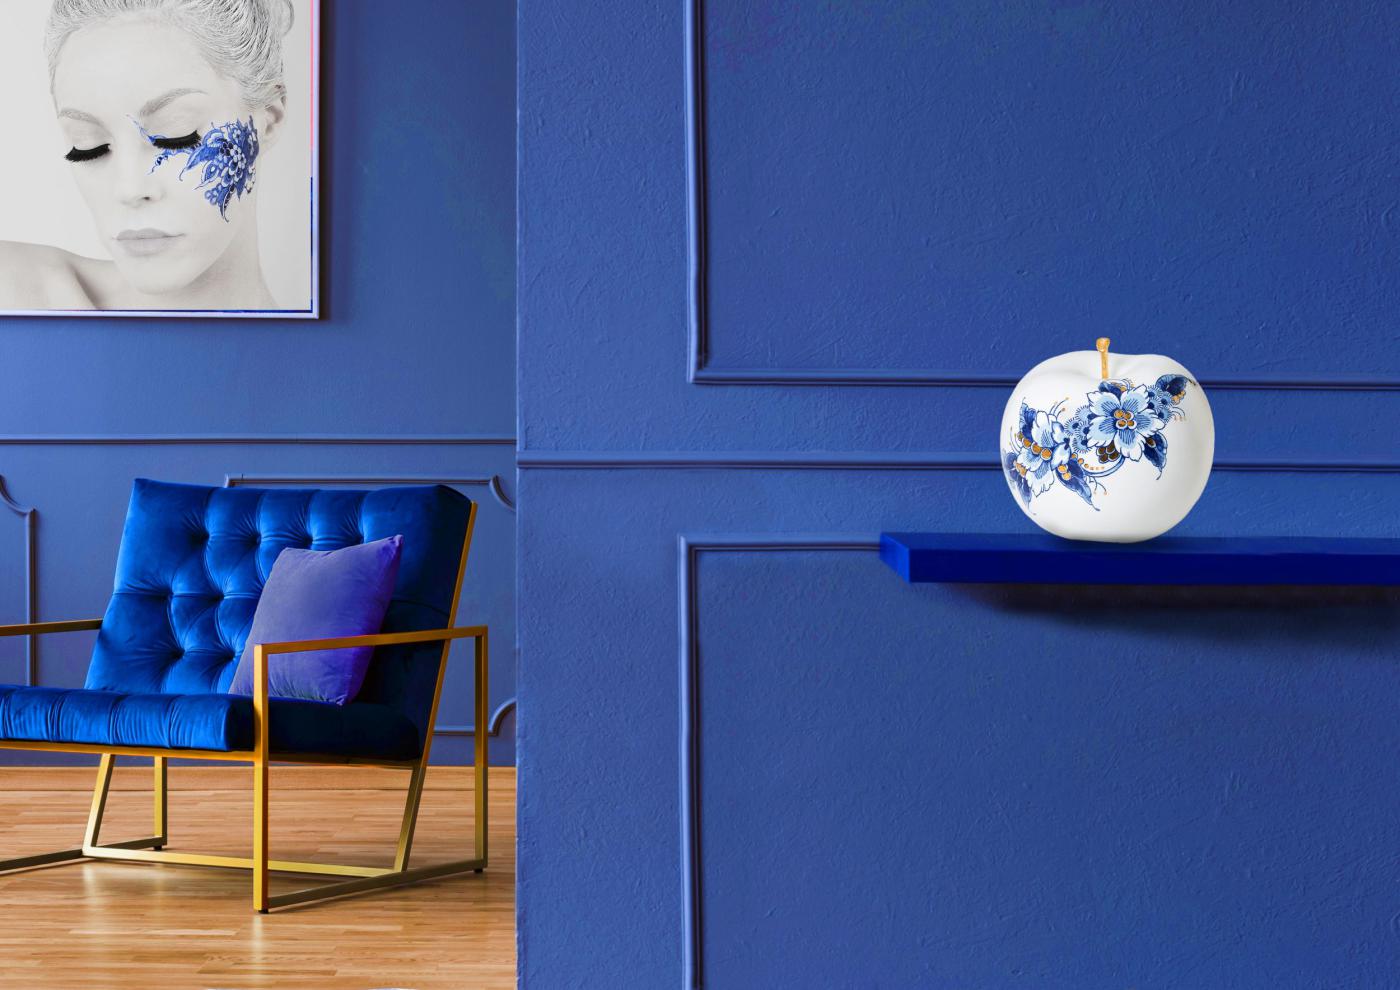 Handgemaakte Delfts Blauwe appel in luxe interieur